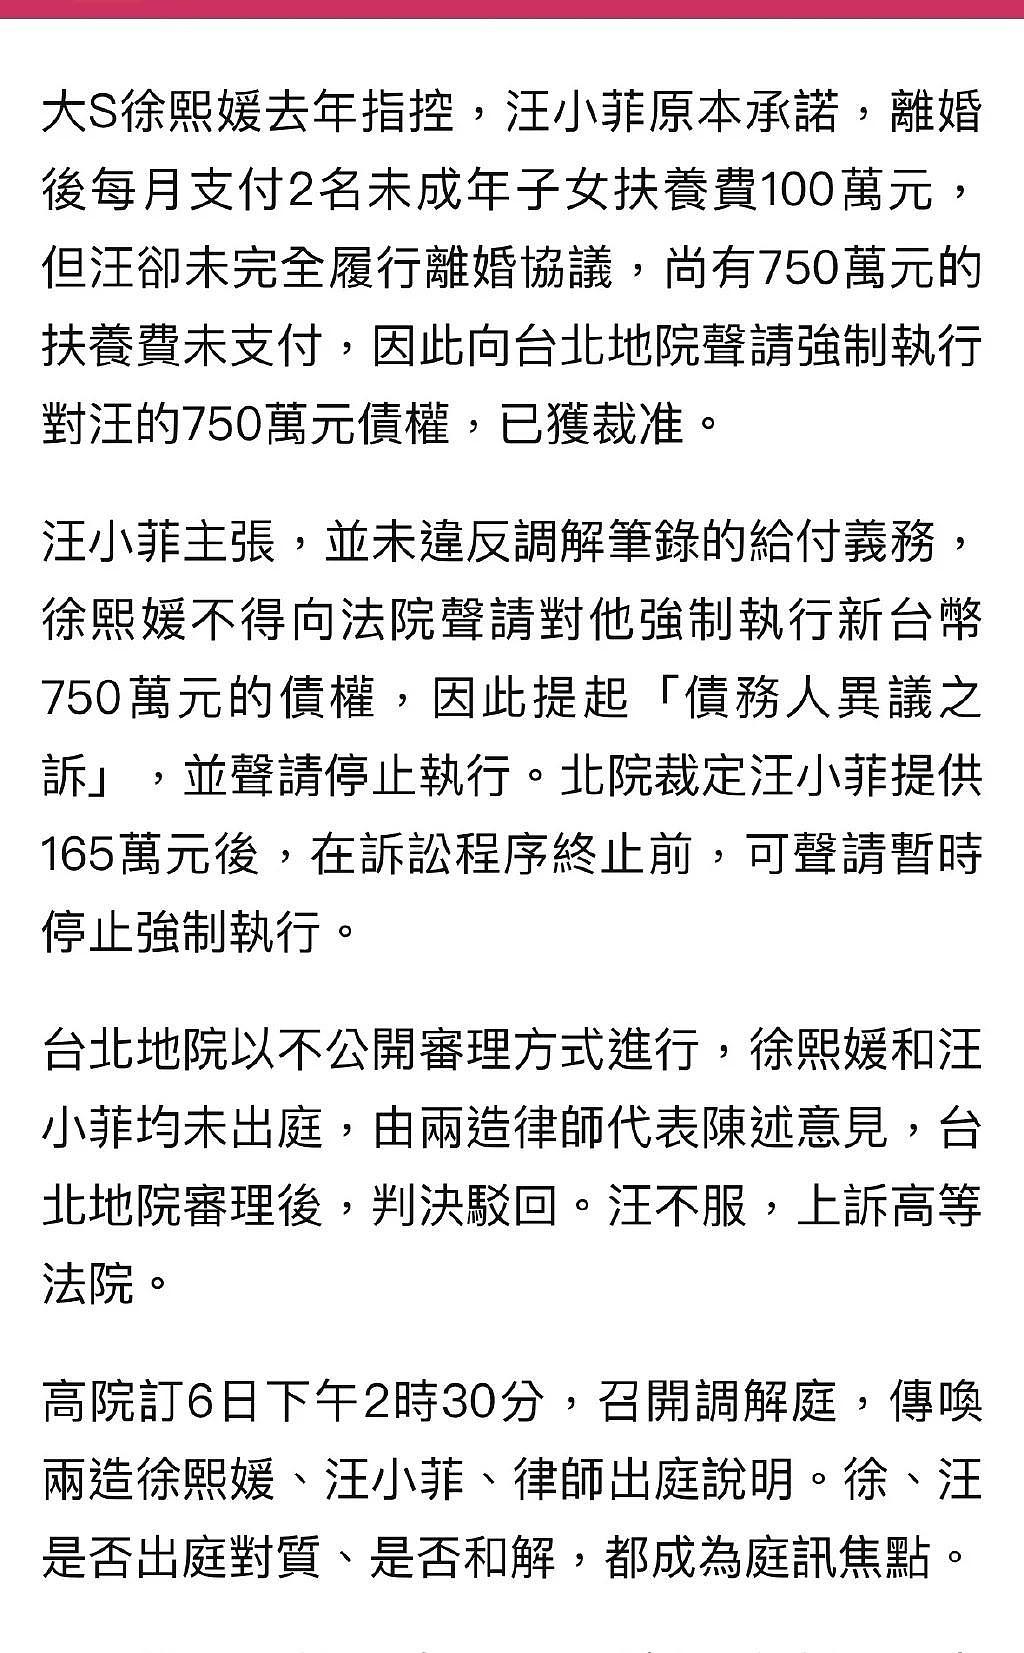 汪小菲不服大 s 胜诉判决诉至高等法院 6 日将再开庭 - 2